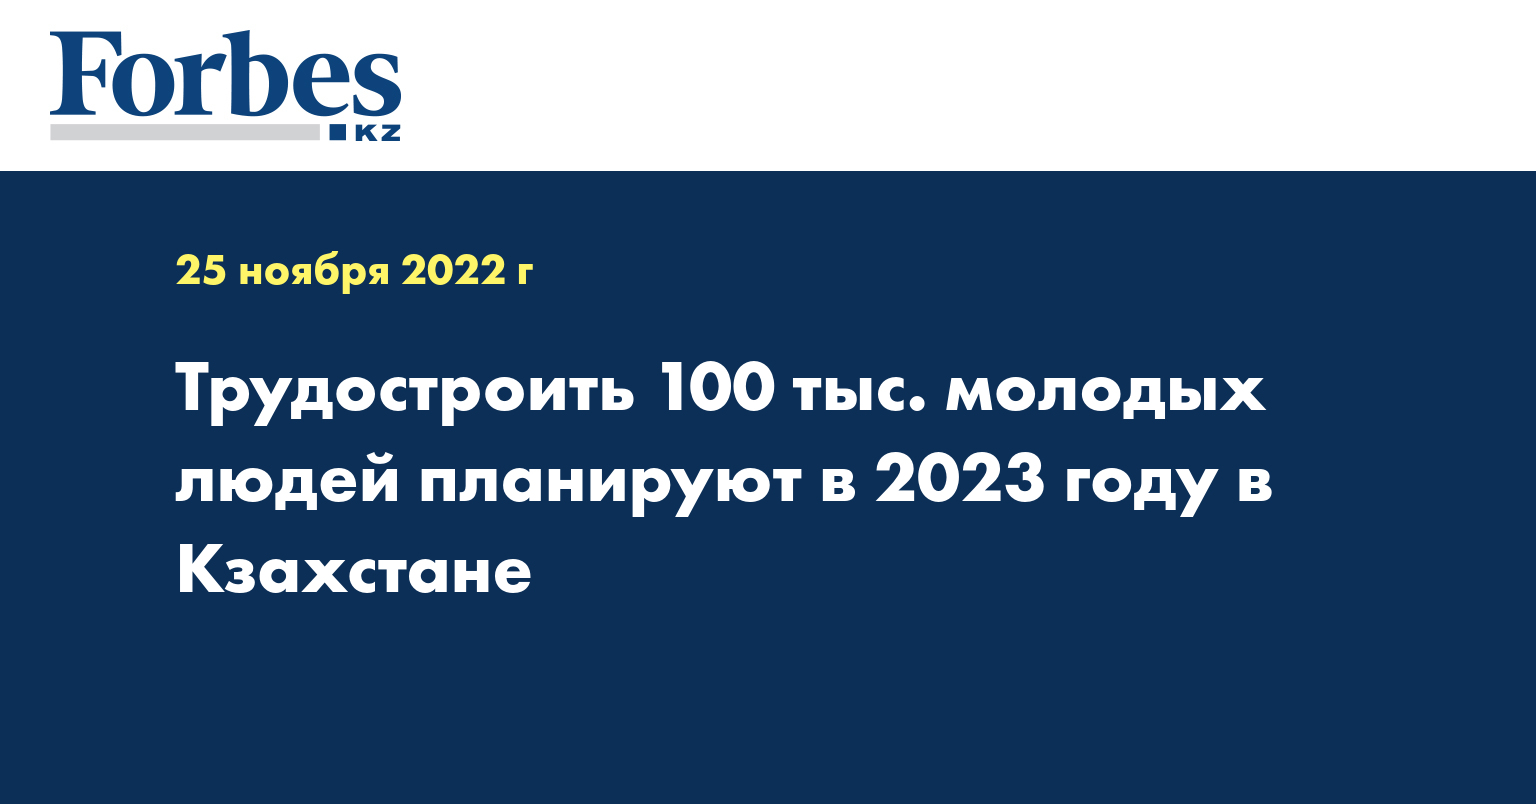 Трудостроить 100 тыс. молодых людей планируют в 2023 году в Кзахстане